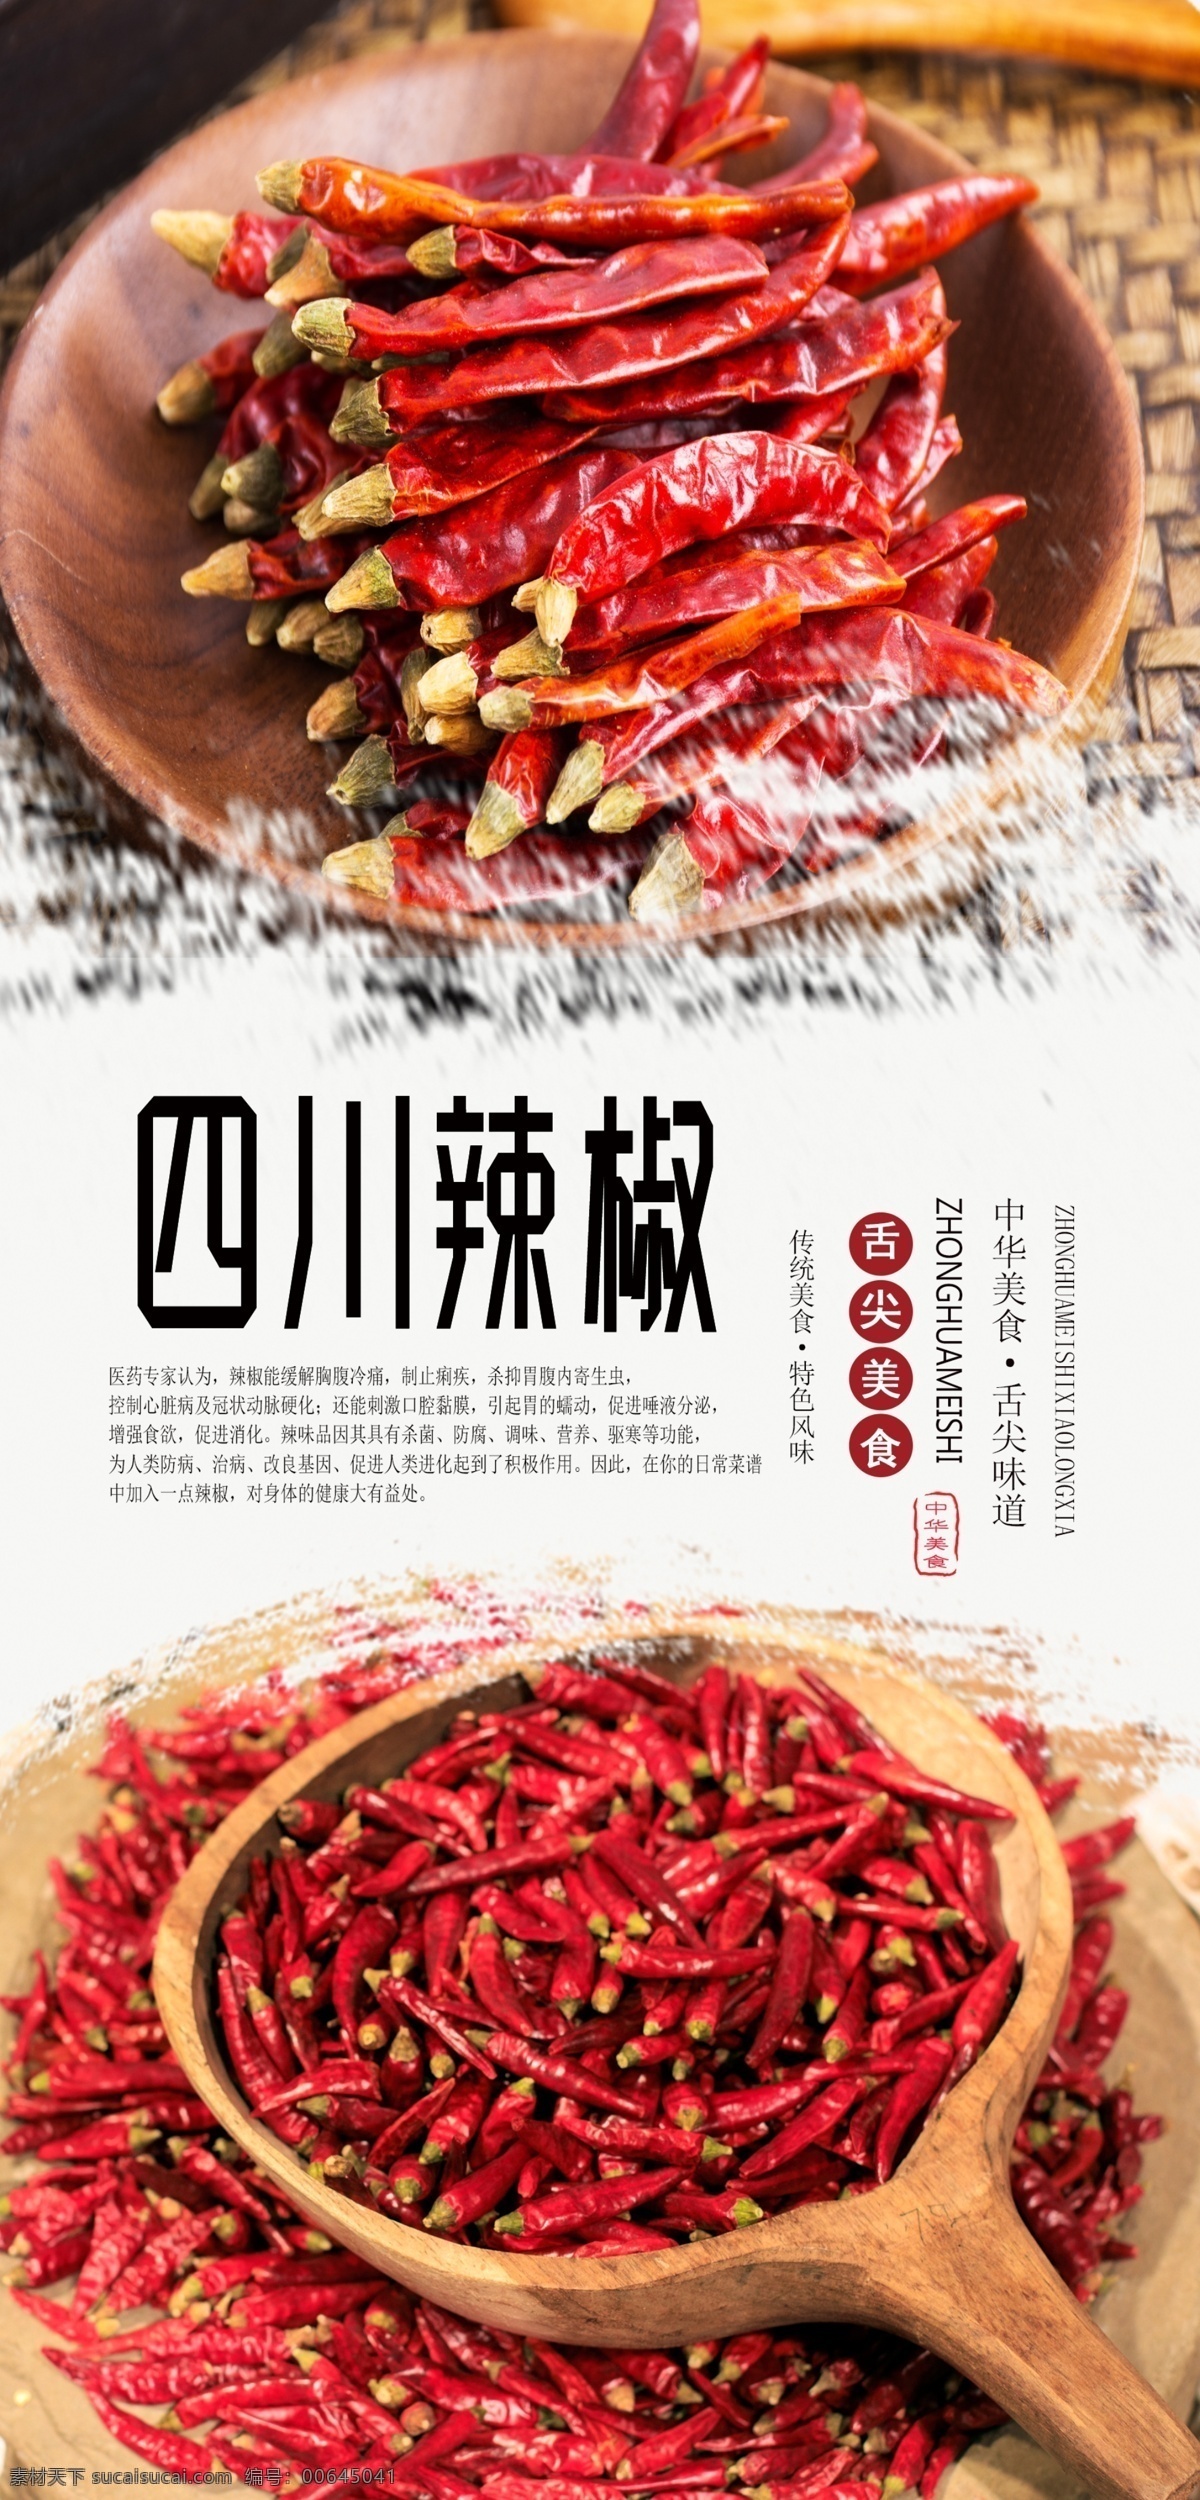 红 辣椒 食 材 海报 红辣椒 食材海报 食材 调料 调味